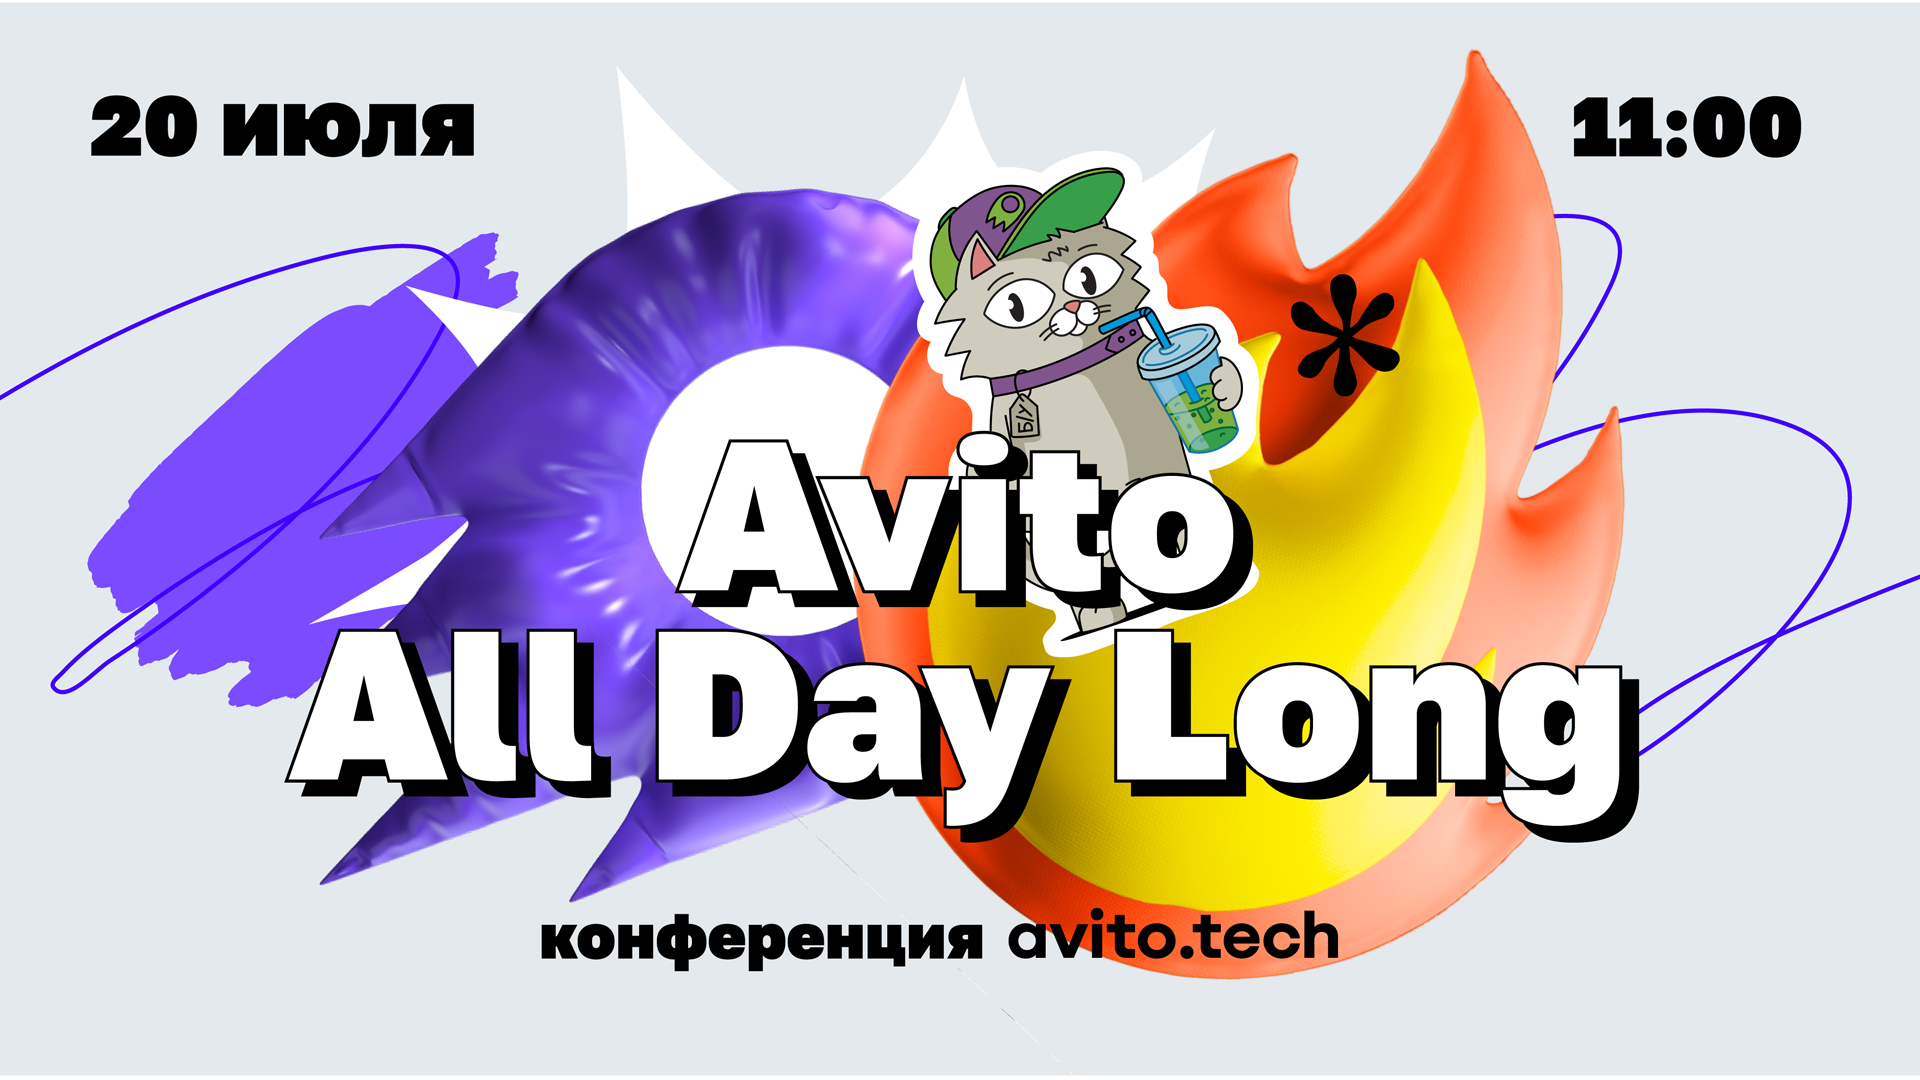 Обложка мероприятия Avito All Day Long